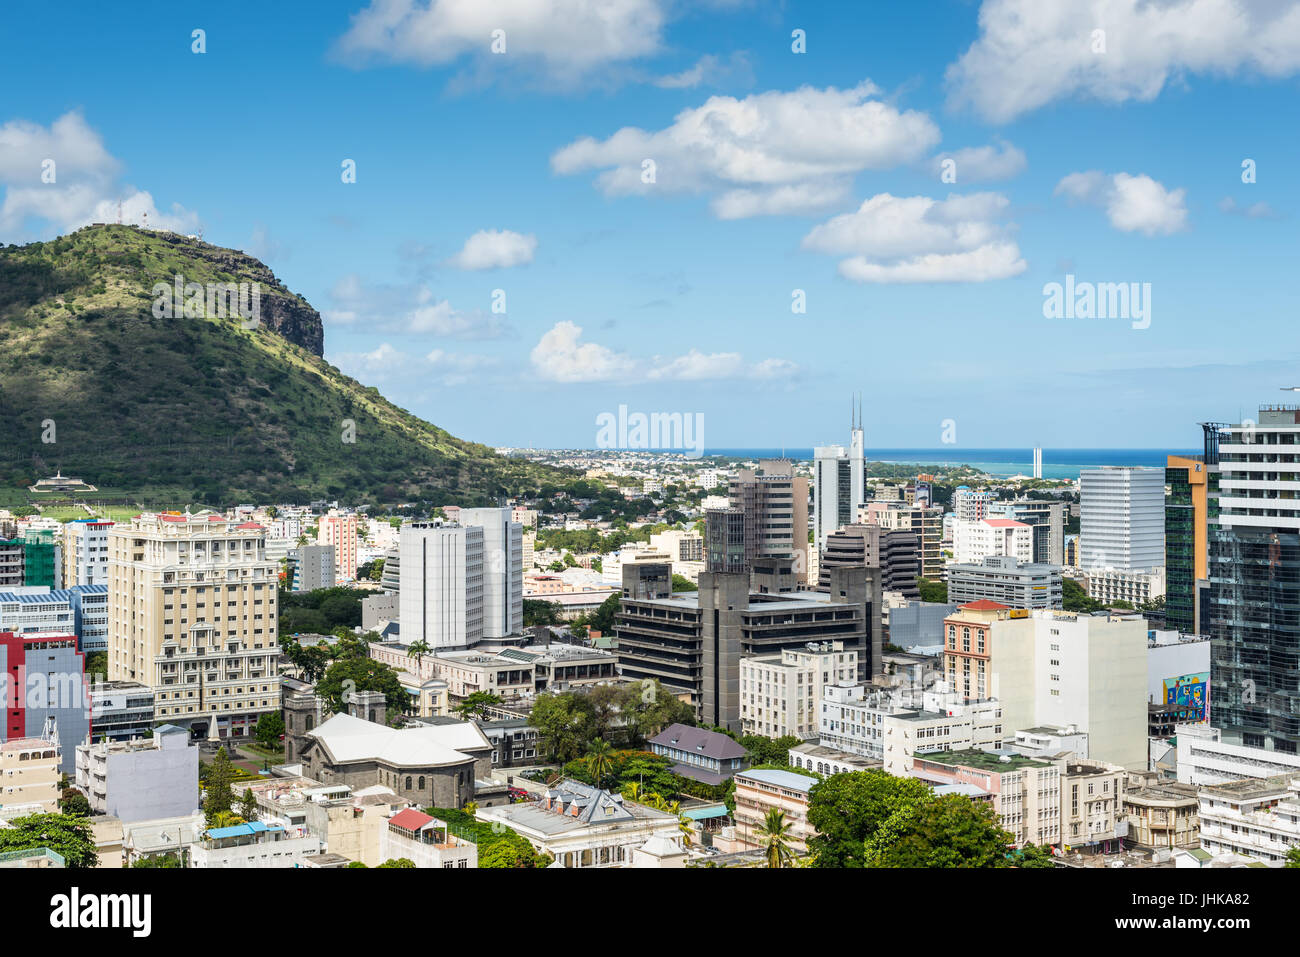 Port Louis, Mauritius - 25. Dezember 2015: Port Louis Skyline - gesehen von der Fort Adelaide entlang des Indischen Ozeans in der Hauptstadt von Mauritius. Stockfoto